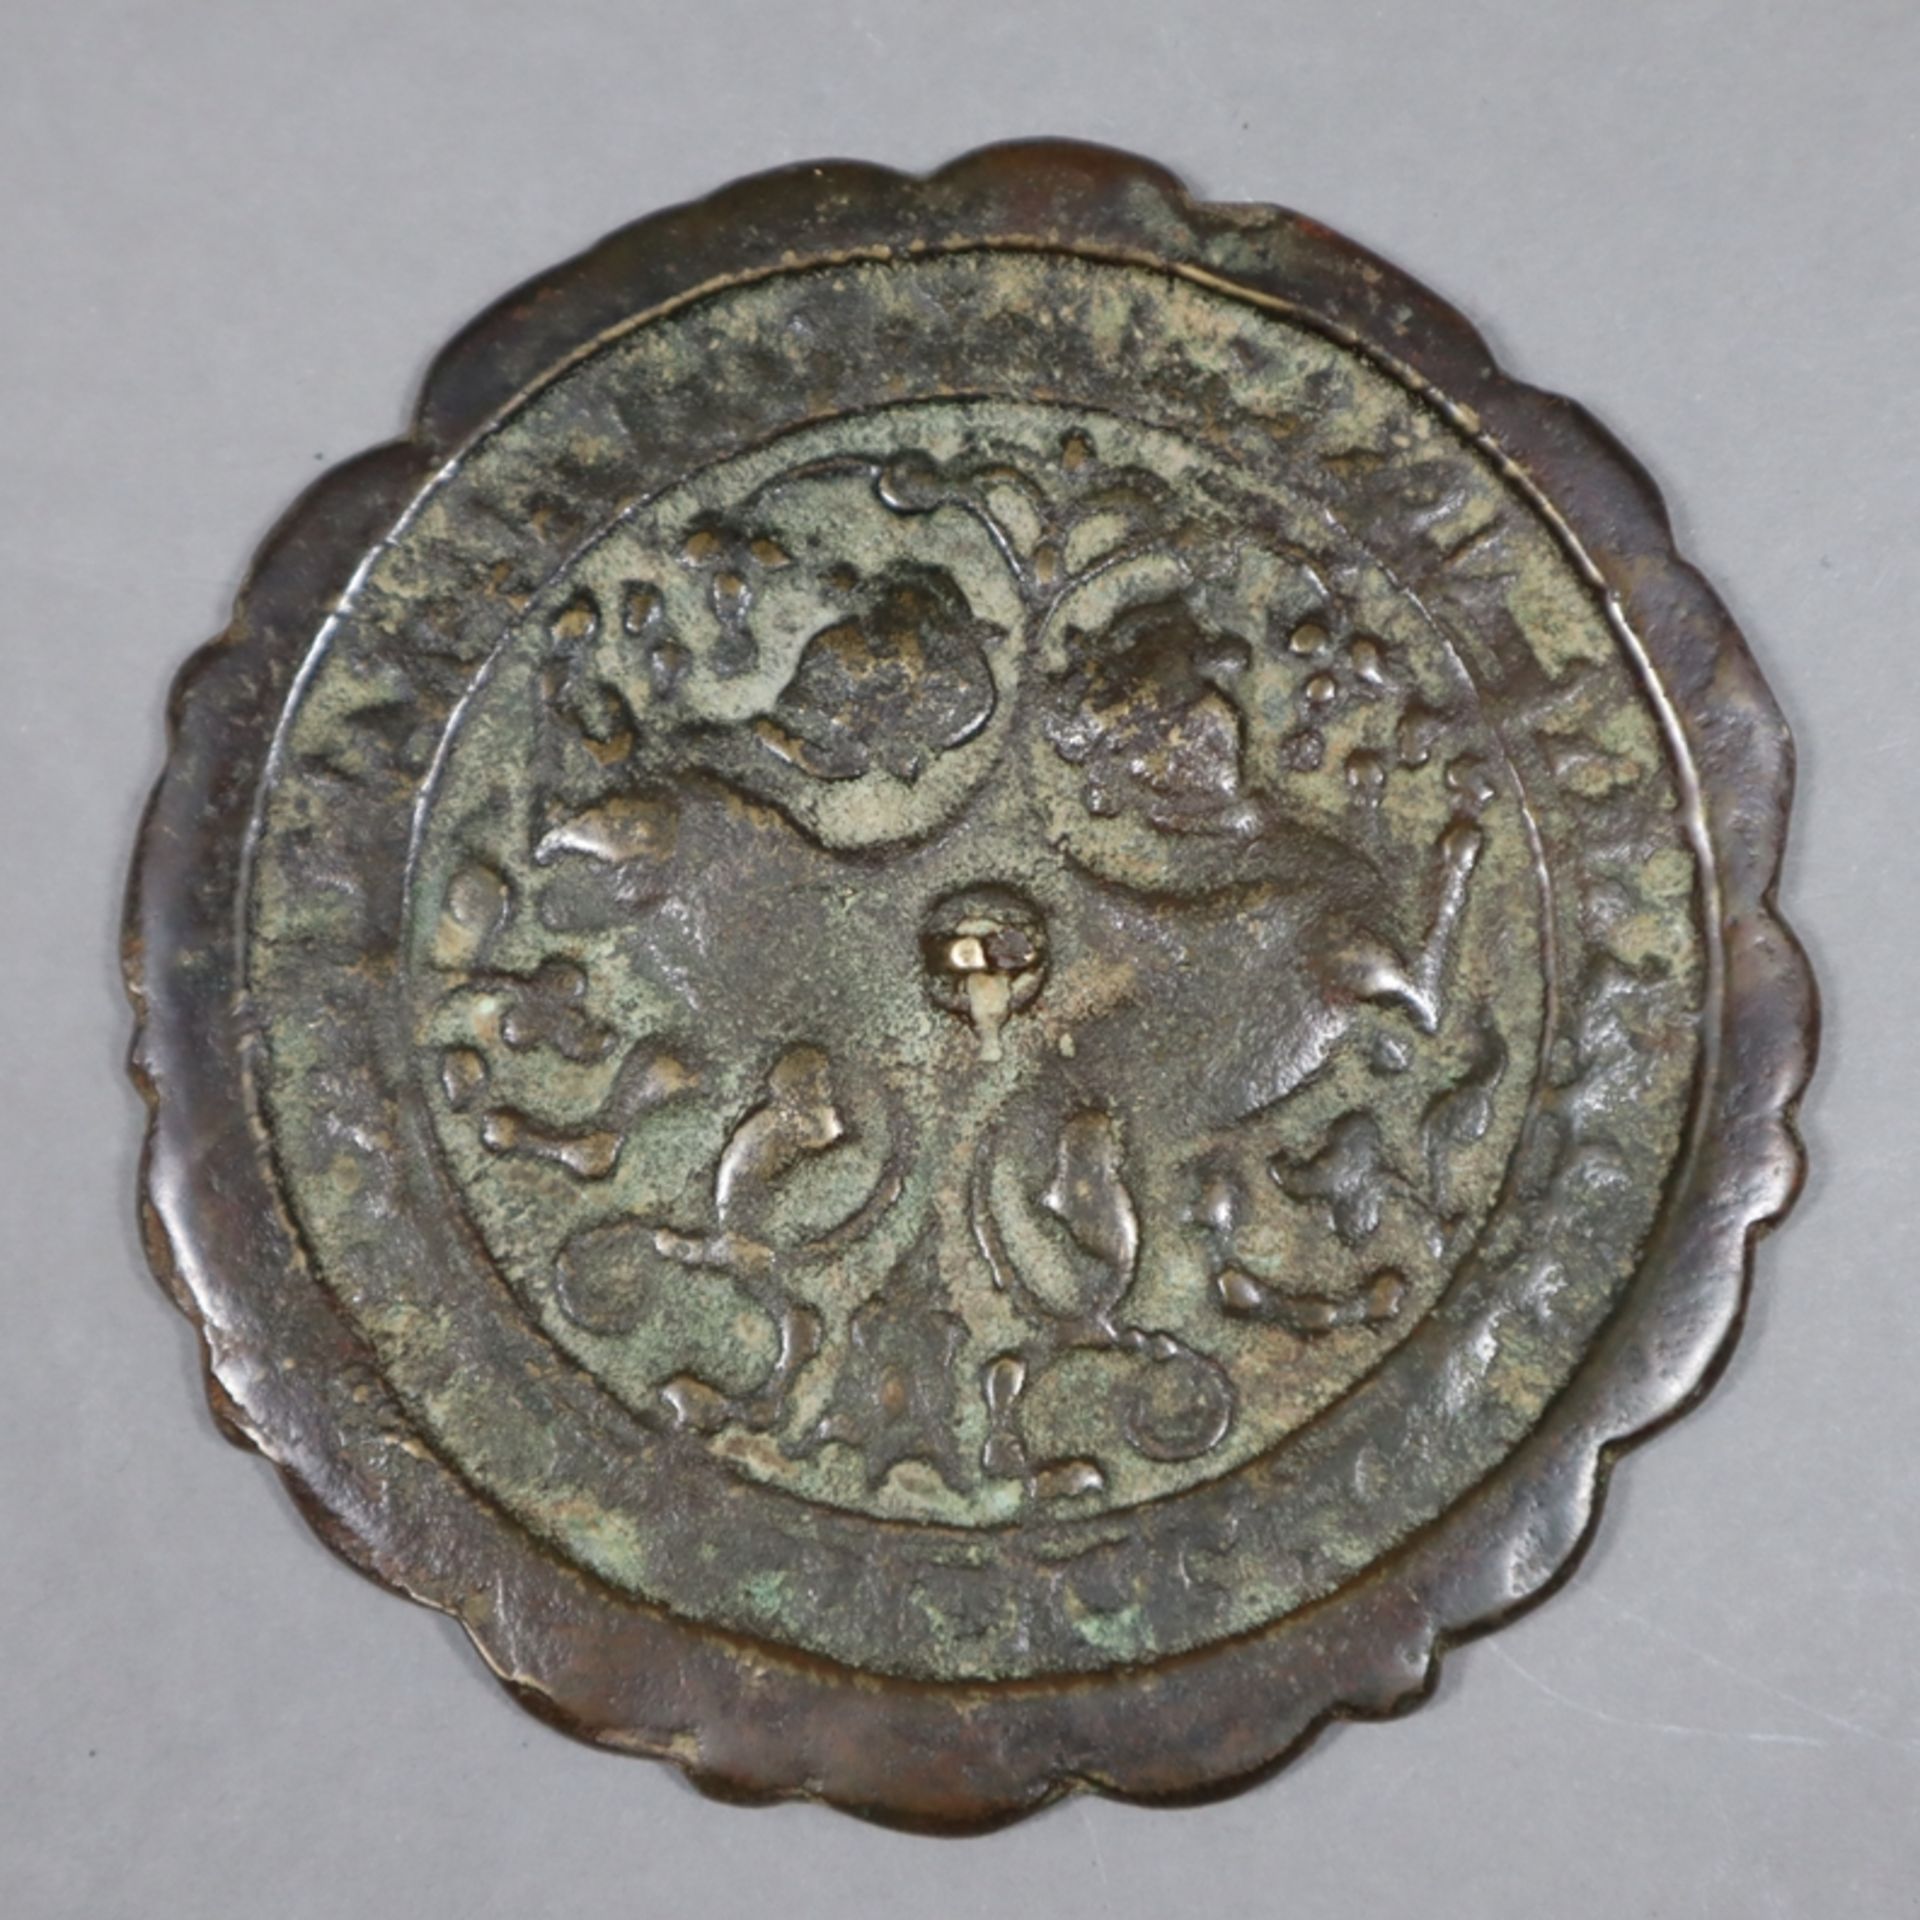 Zwei kleine Spiegel - Bronze, runde, flache teils passig geschweifte Scheibenform mit zentralem Kna - Image 3 of 5